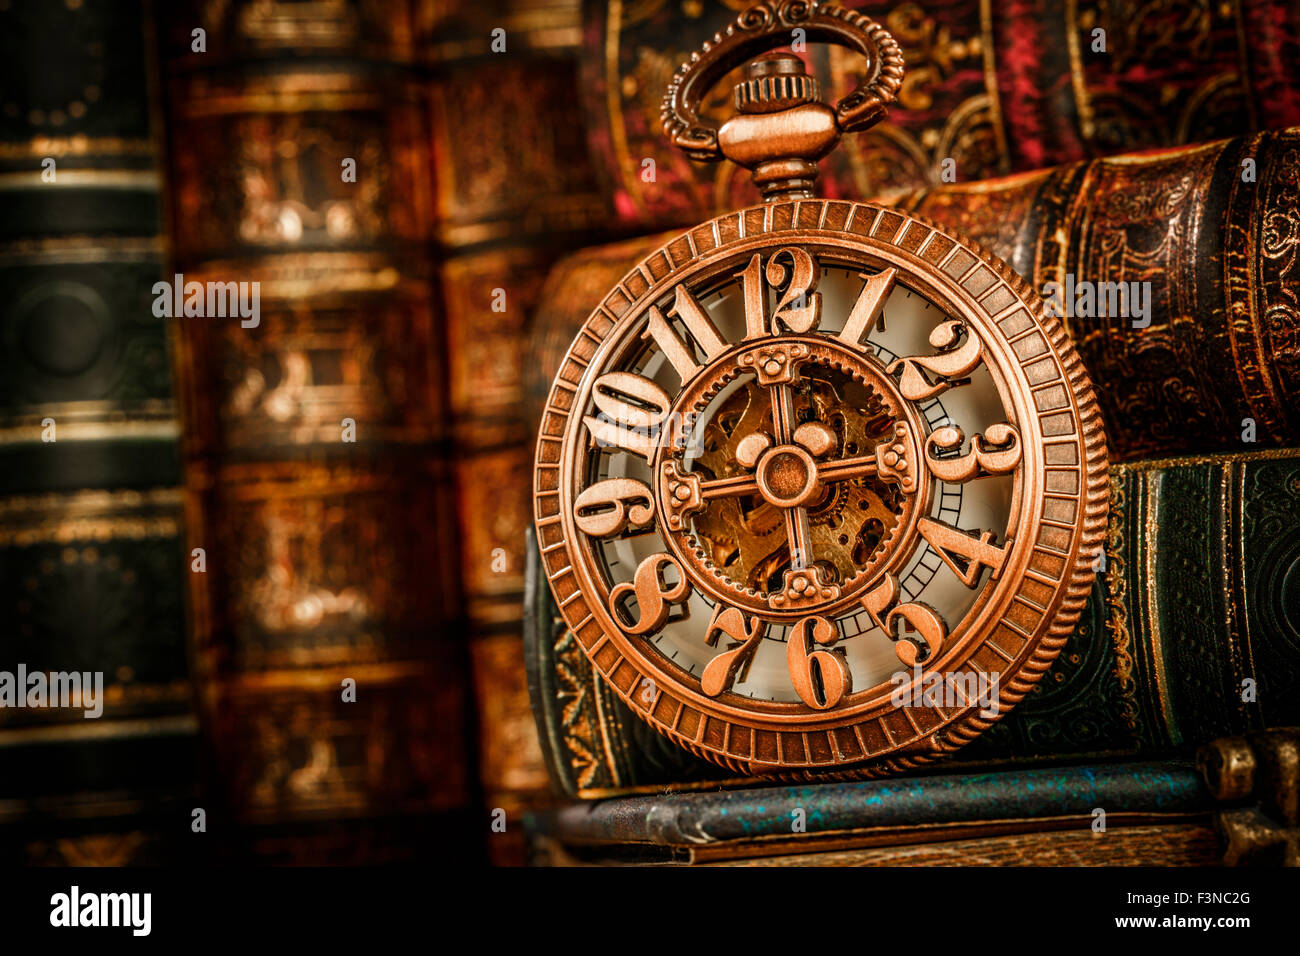 Vintage antico orologio da tasca sullo sfondo di libri antichi Foto Stock